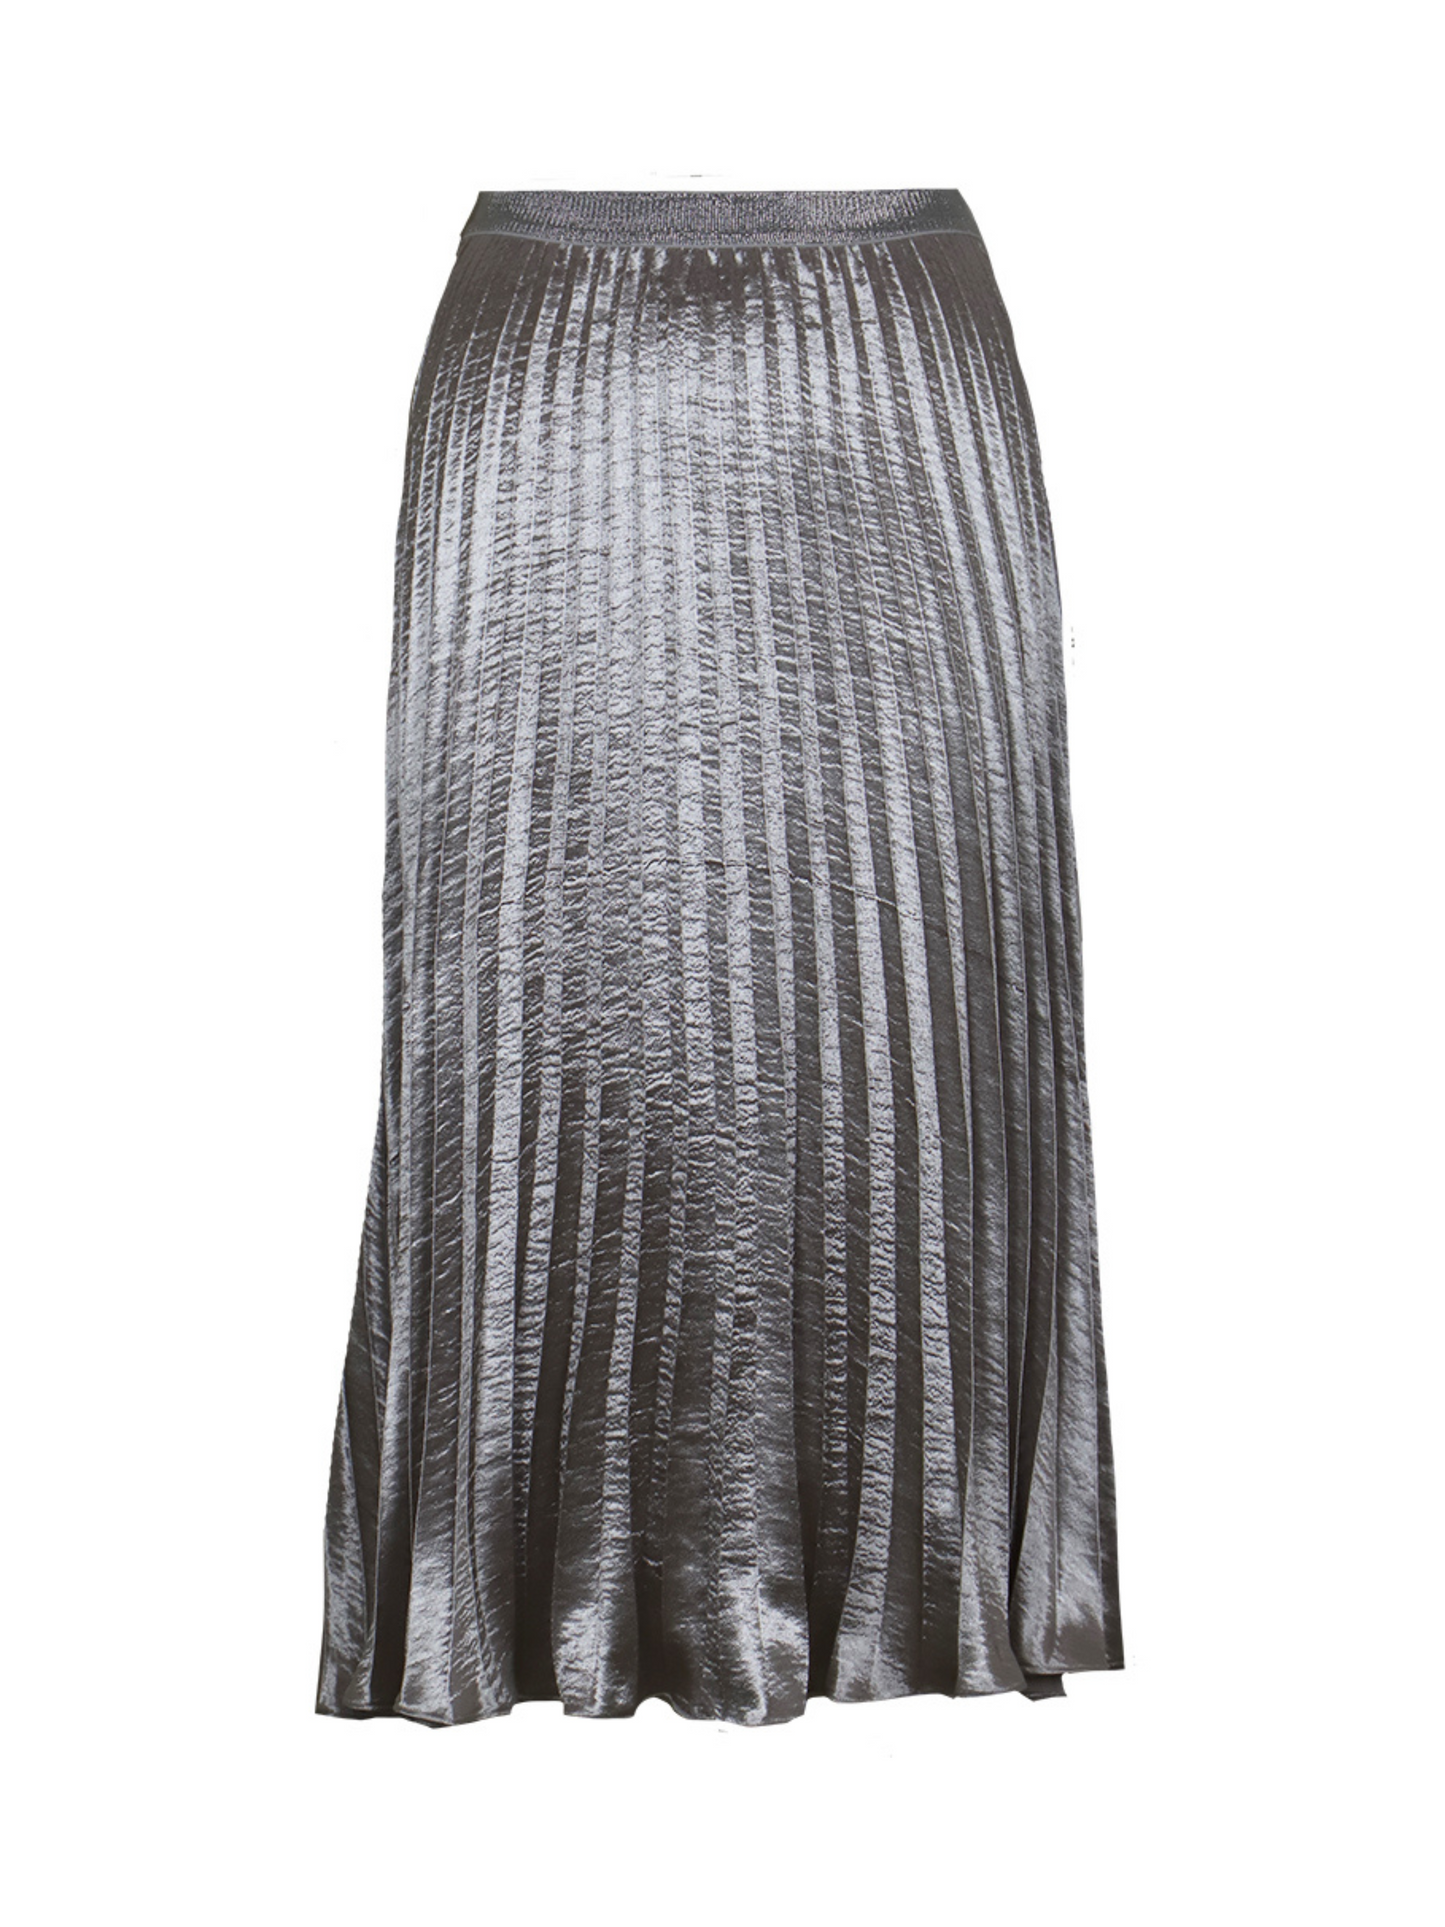 Pewter Pleated Midi Skirt - FINAL SALE